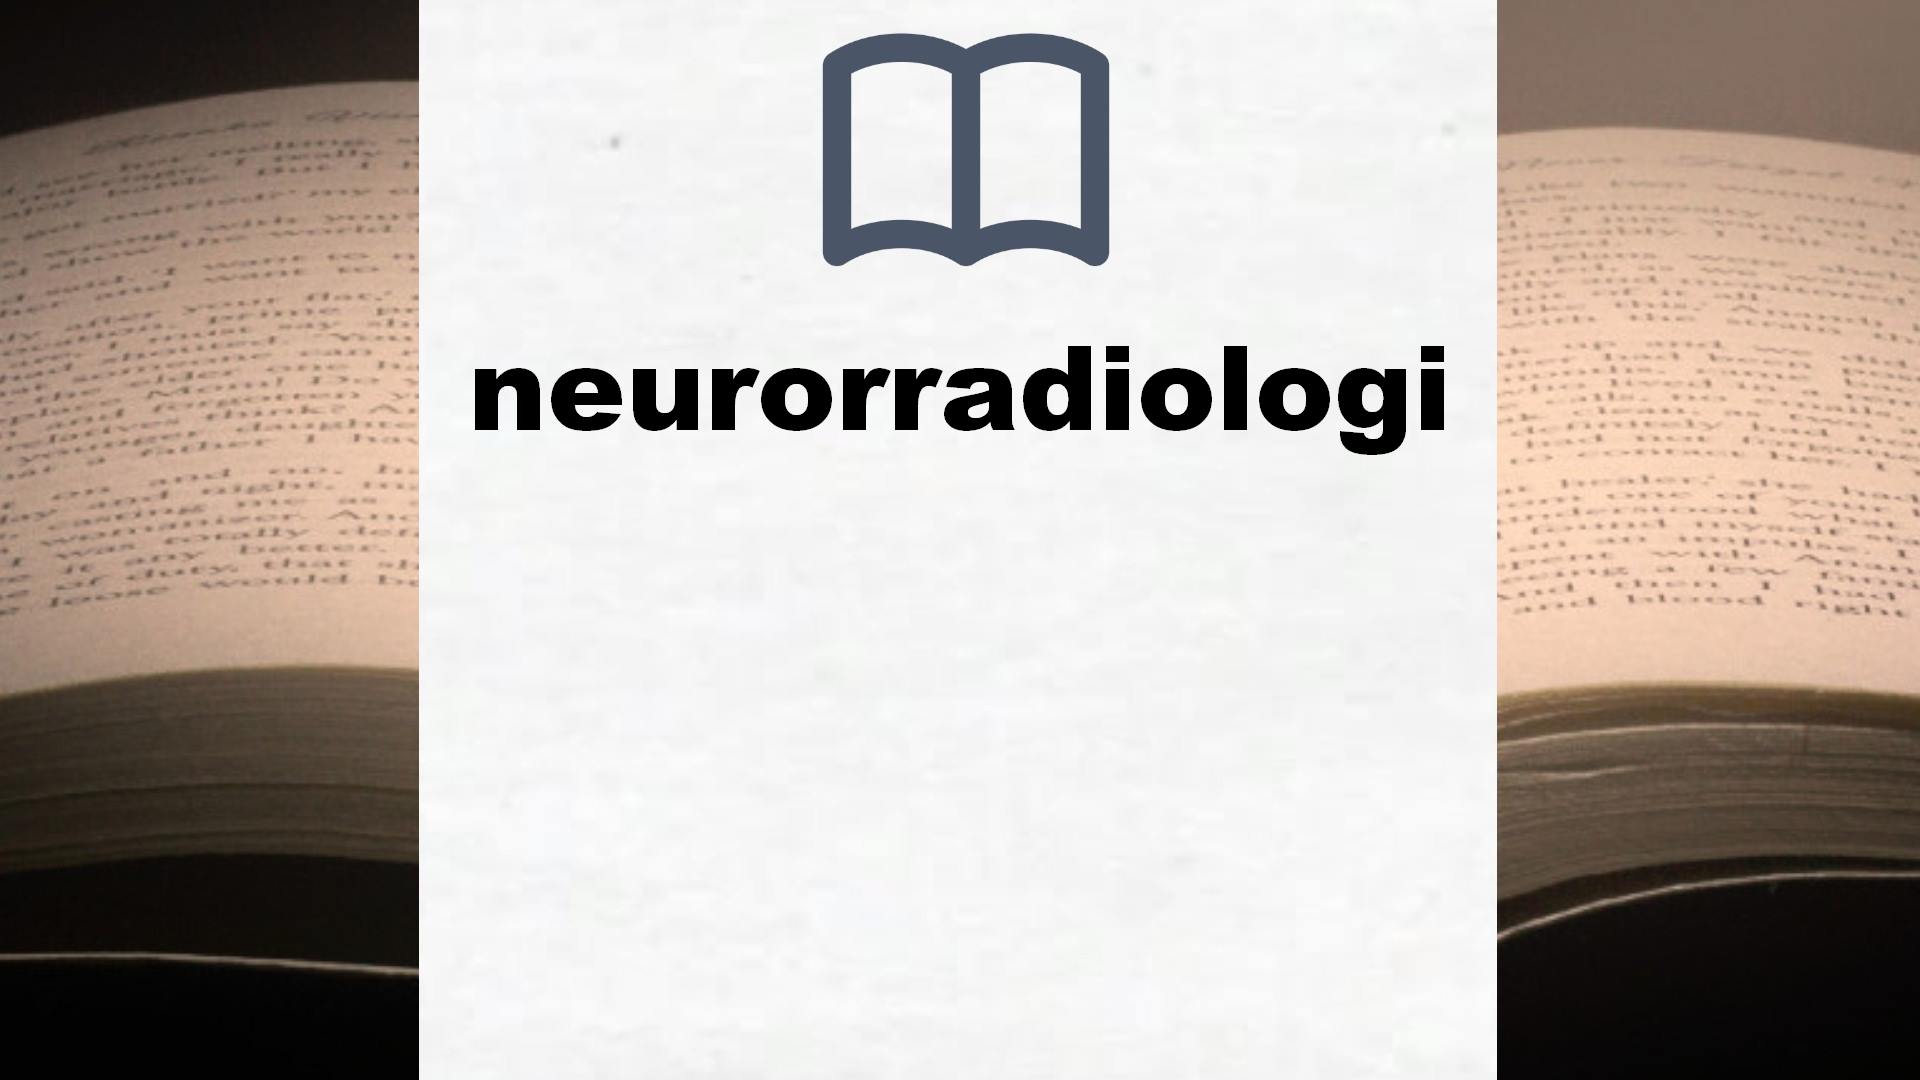 Libros sobre neurorradiologia